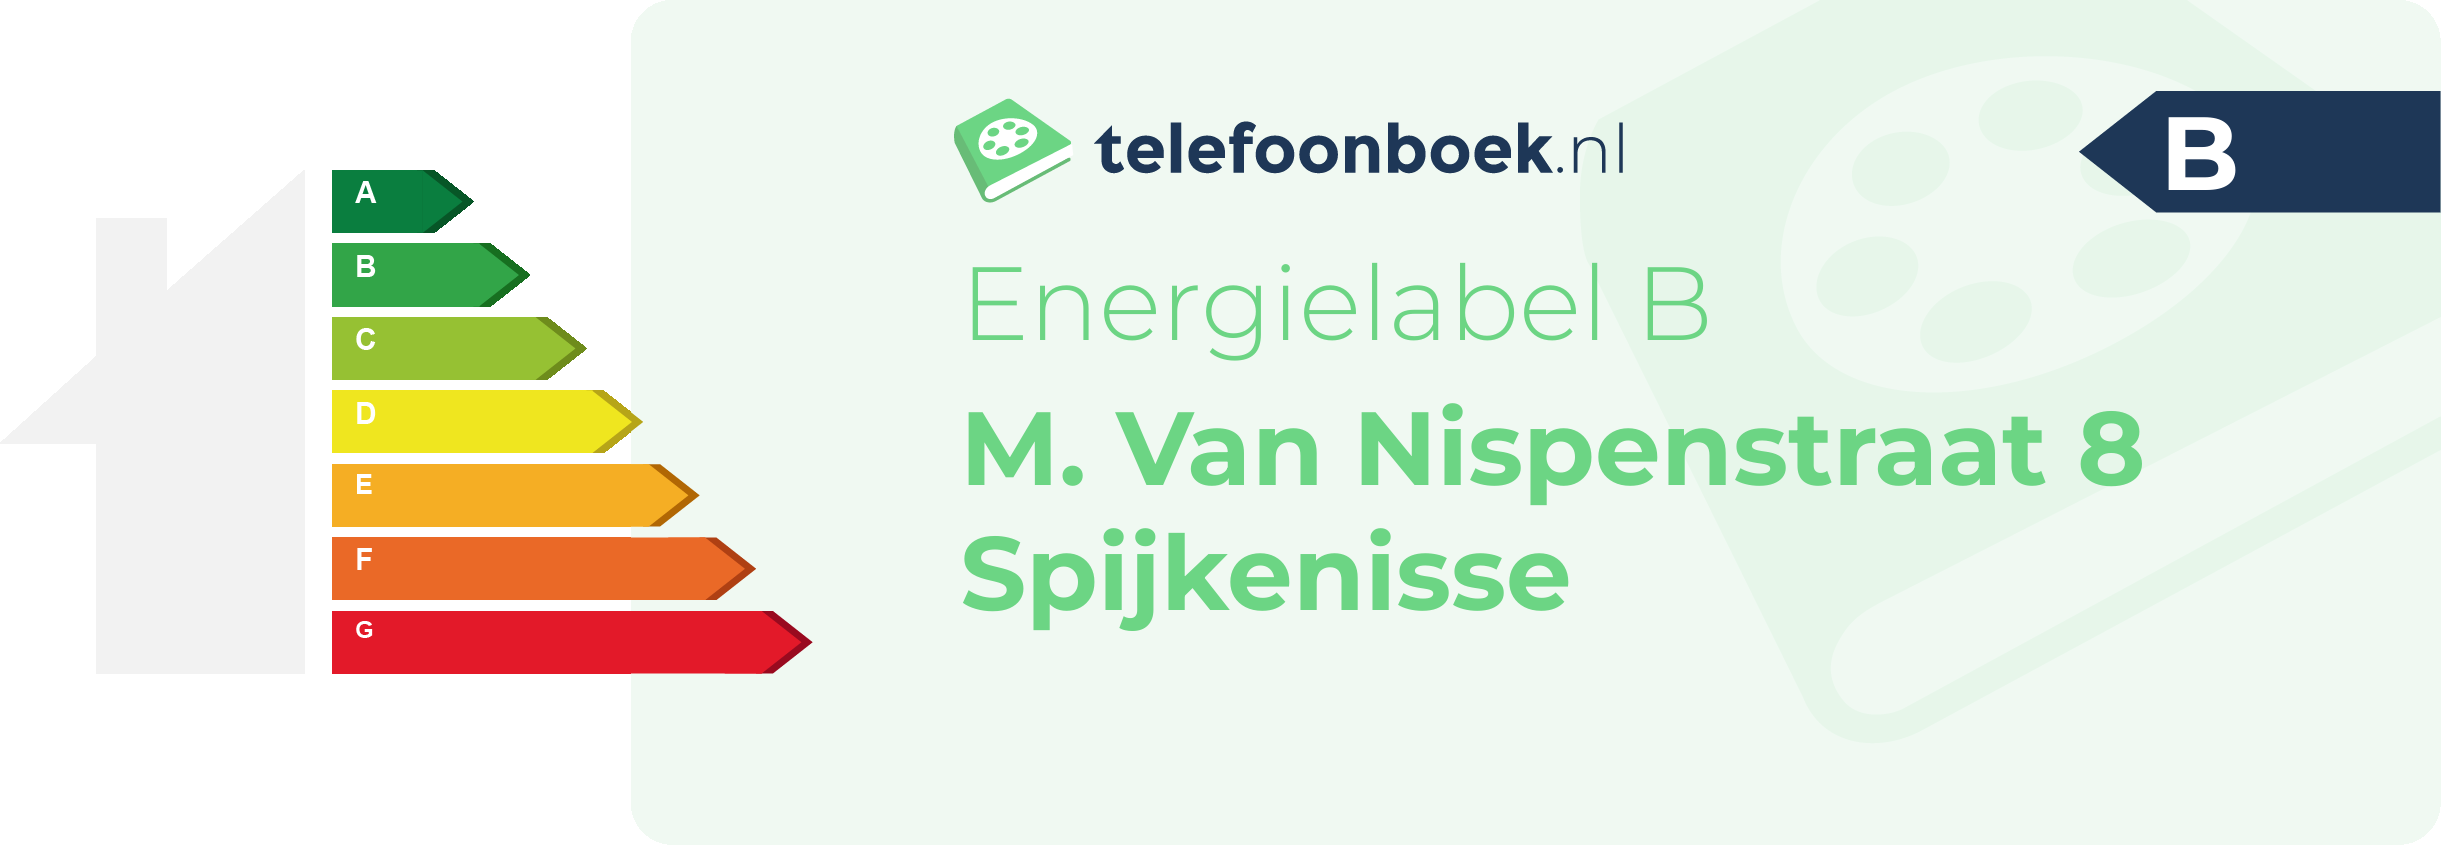 Energielabel M. Van Nispenstraat 8 Spijkenisse